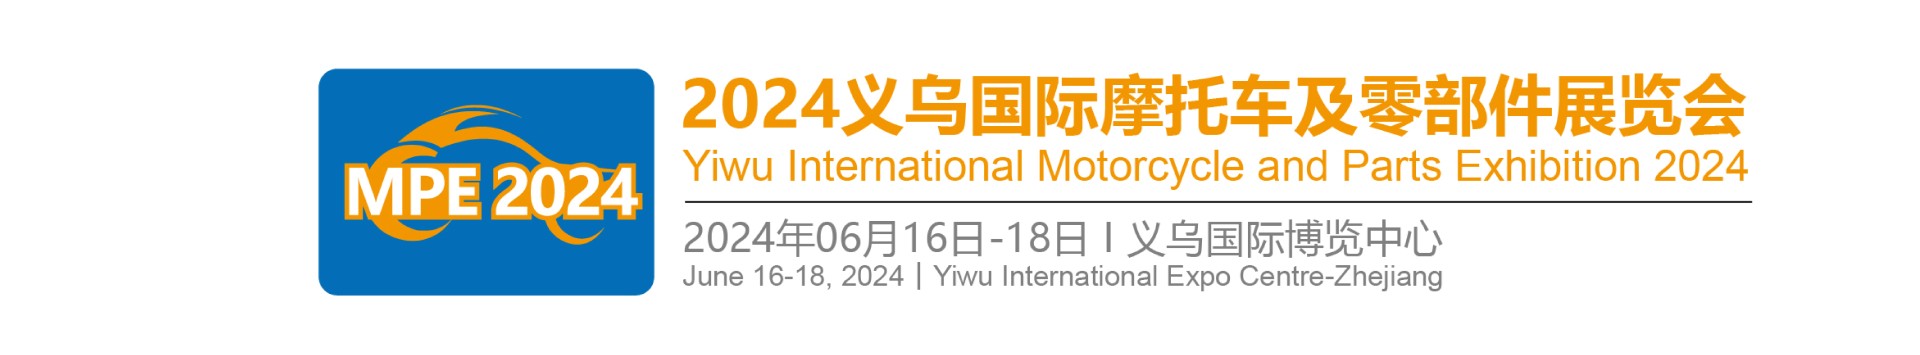 2024義烏國際摩托車(chē)及零部件展覽會